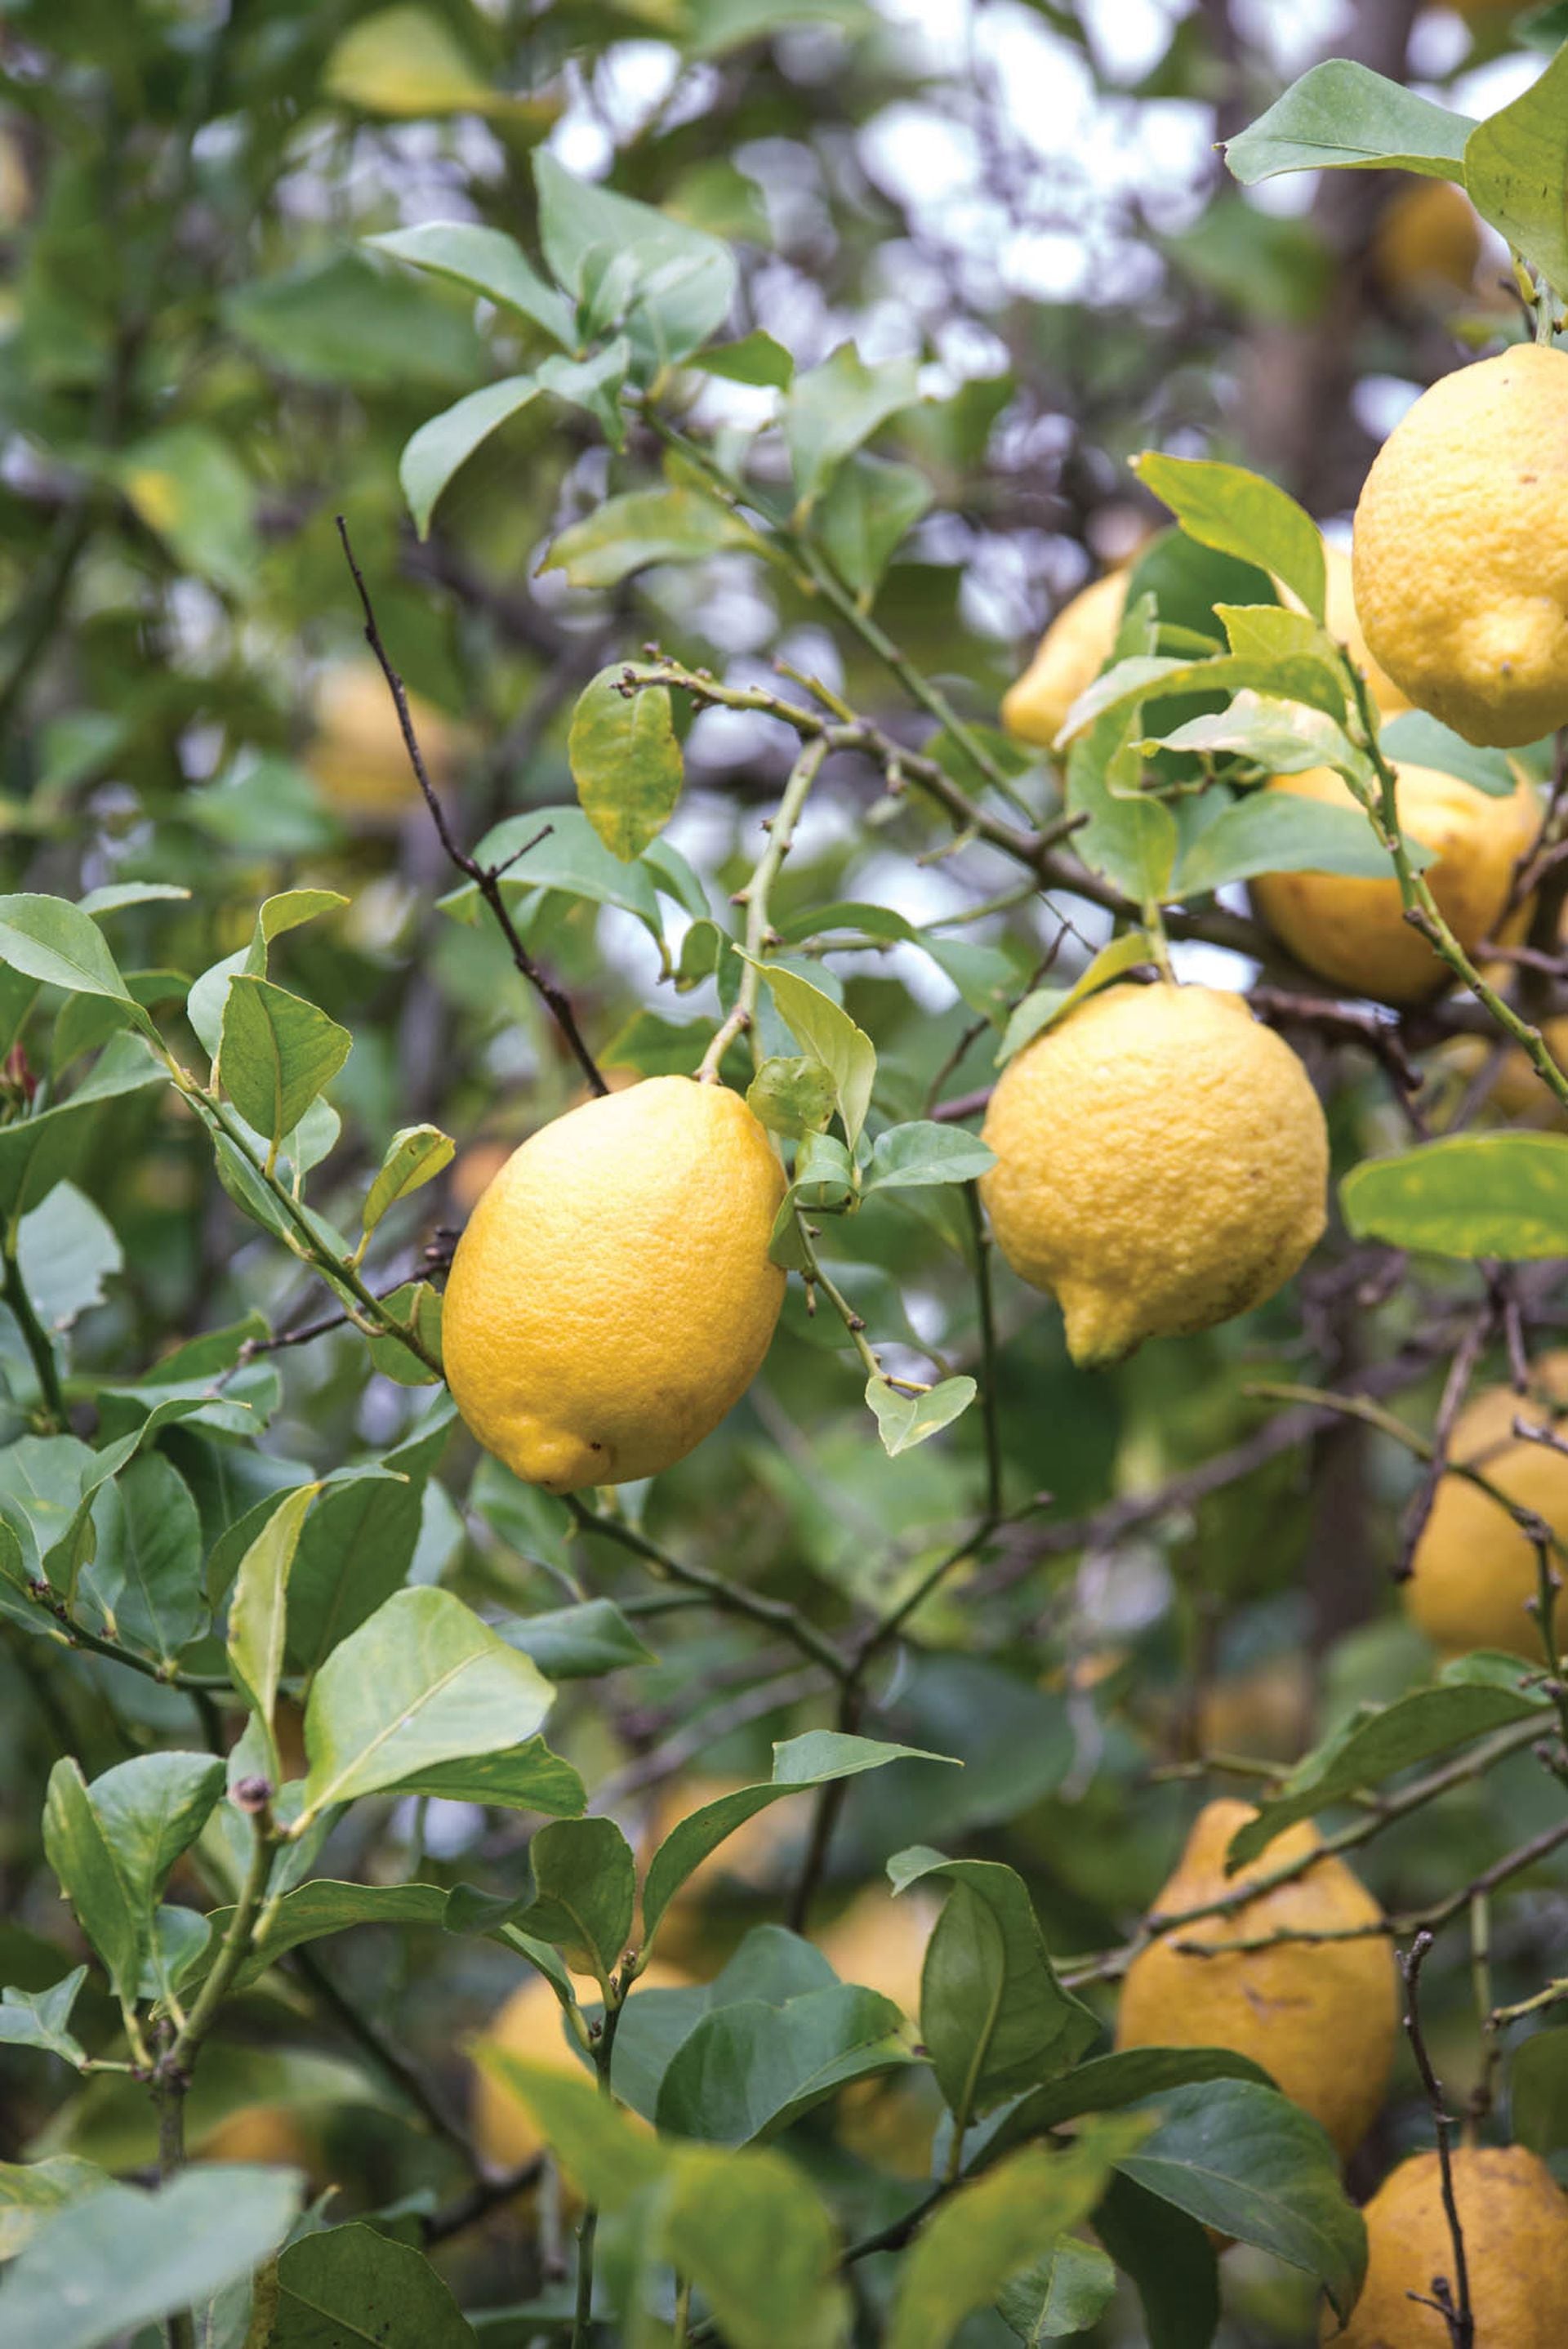 La madurez de la fruta influye en el contenido ácido: en la cocina, se puede elegir un limón maduro con menos ácido o uno casi verde con más acidez, según la receta.